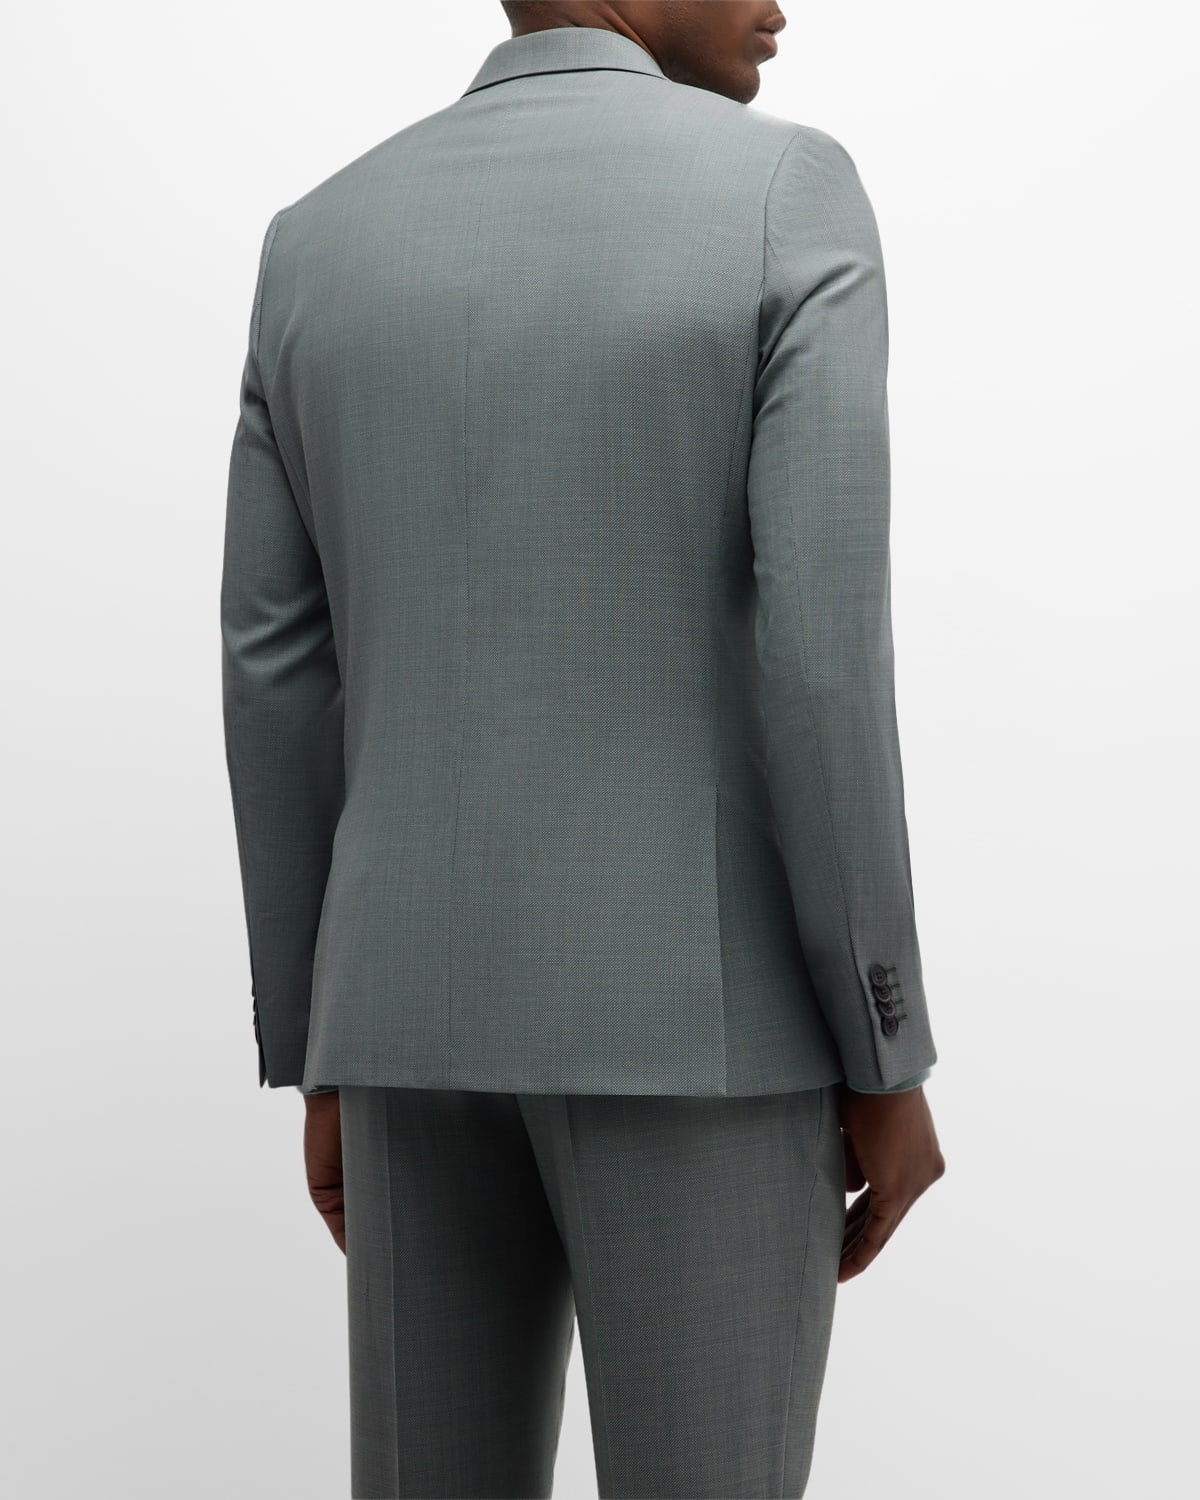 Men's Textured Stretch Cotton Suit - 4